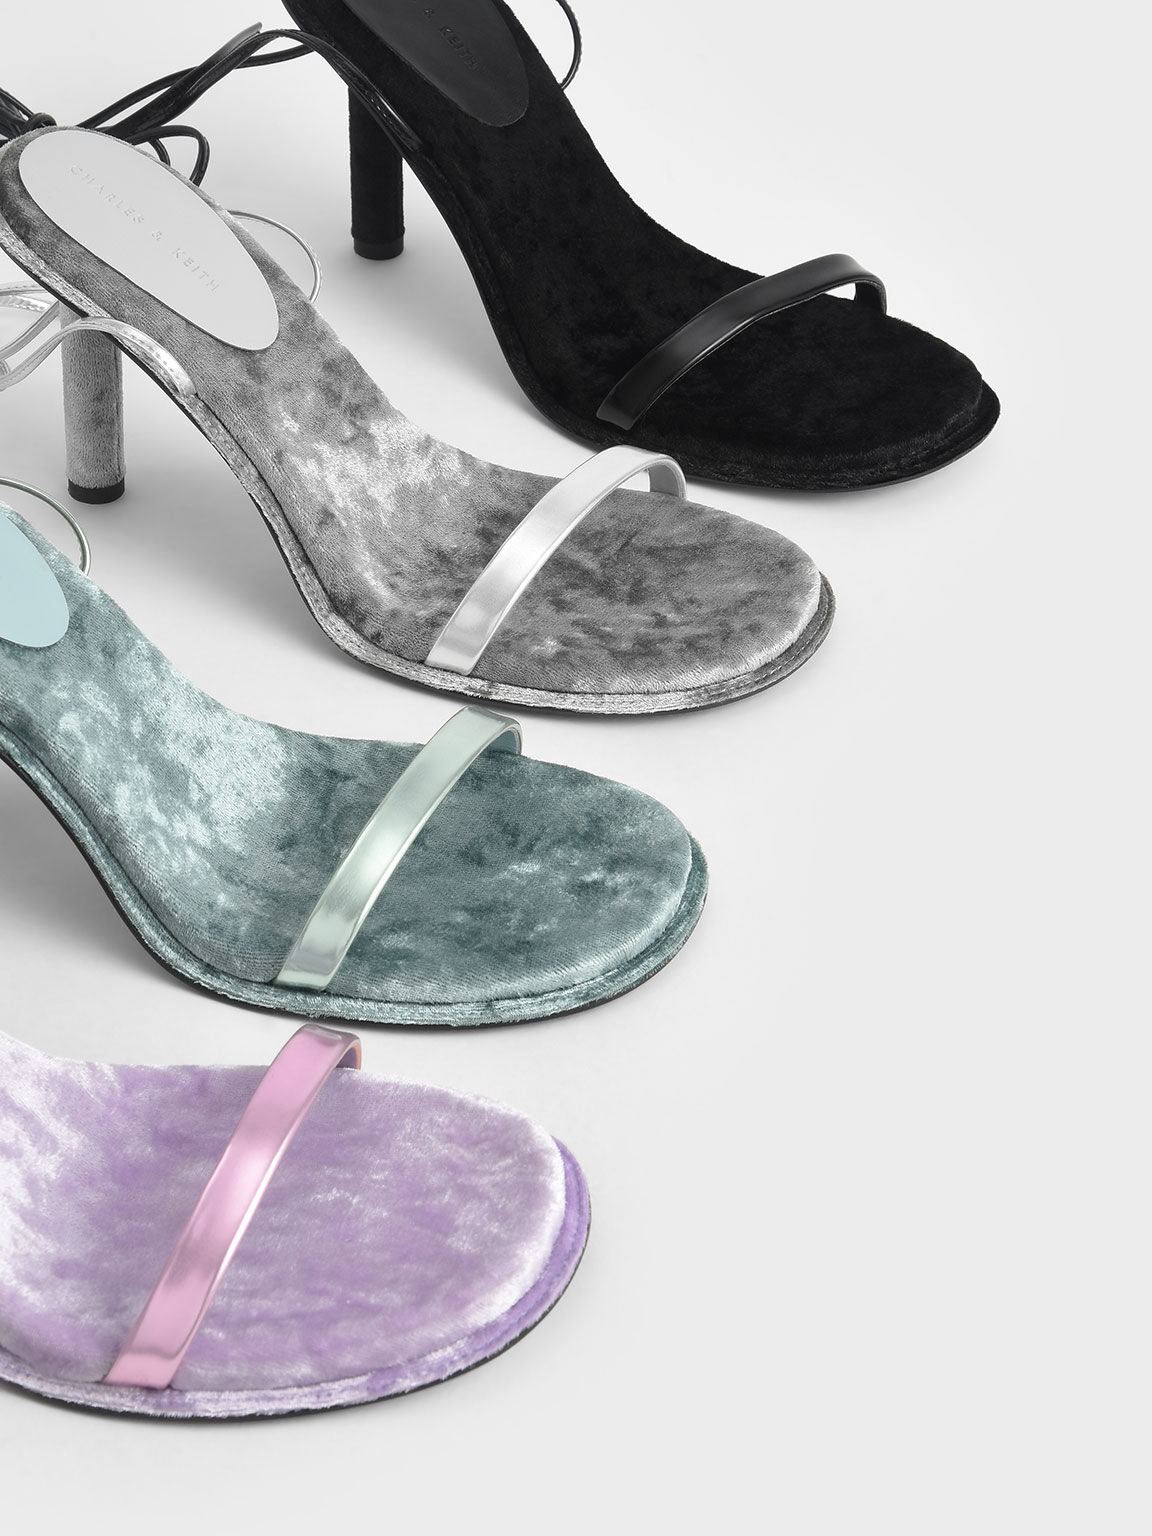 Kiera Metallic Tie-Around Stiletto Sandals, Lilac, hi-res